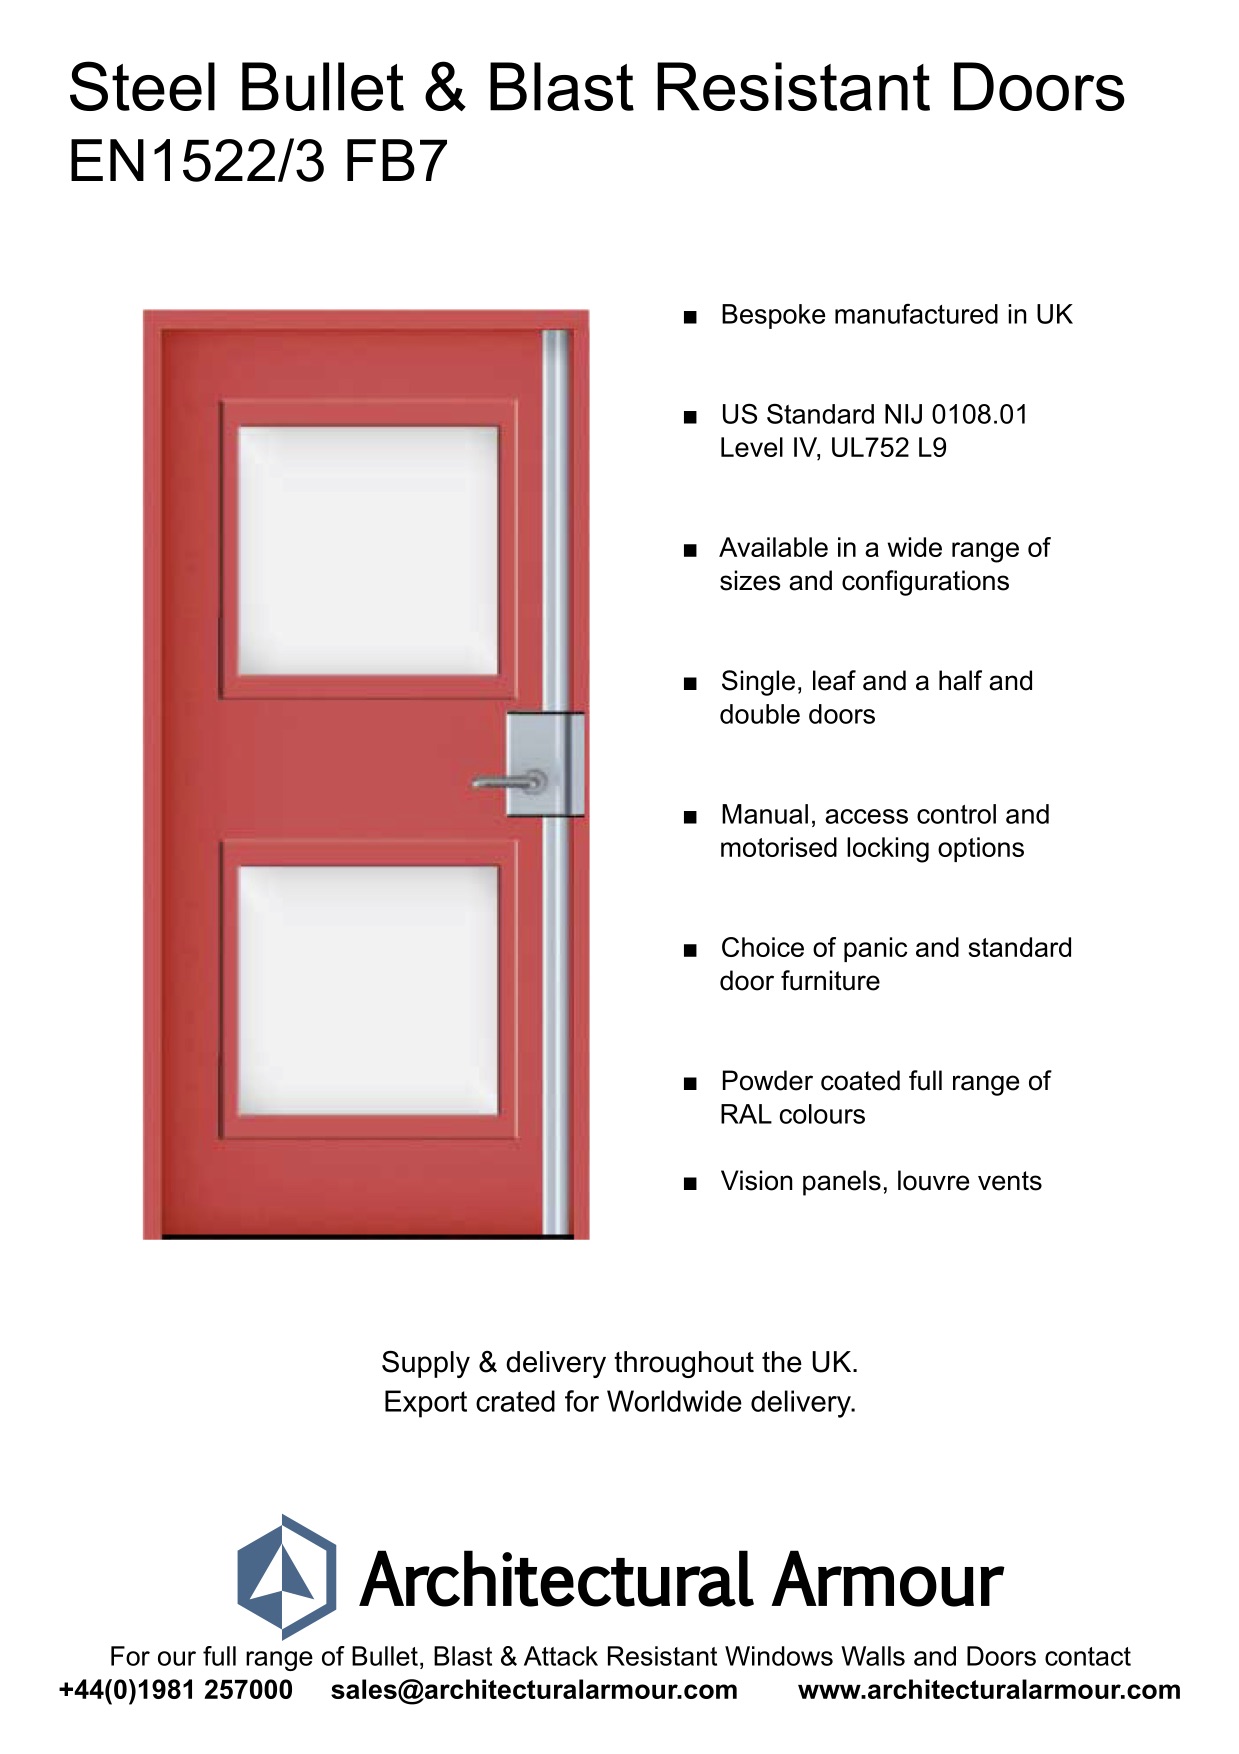 Bullet-and-Blast-Resistant-Steel-Doors-Vision-Panel-EN1522-3-FB7-BR7-UK